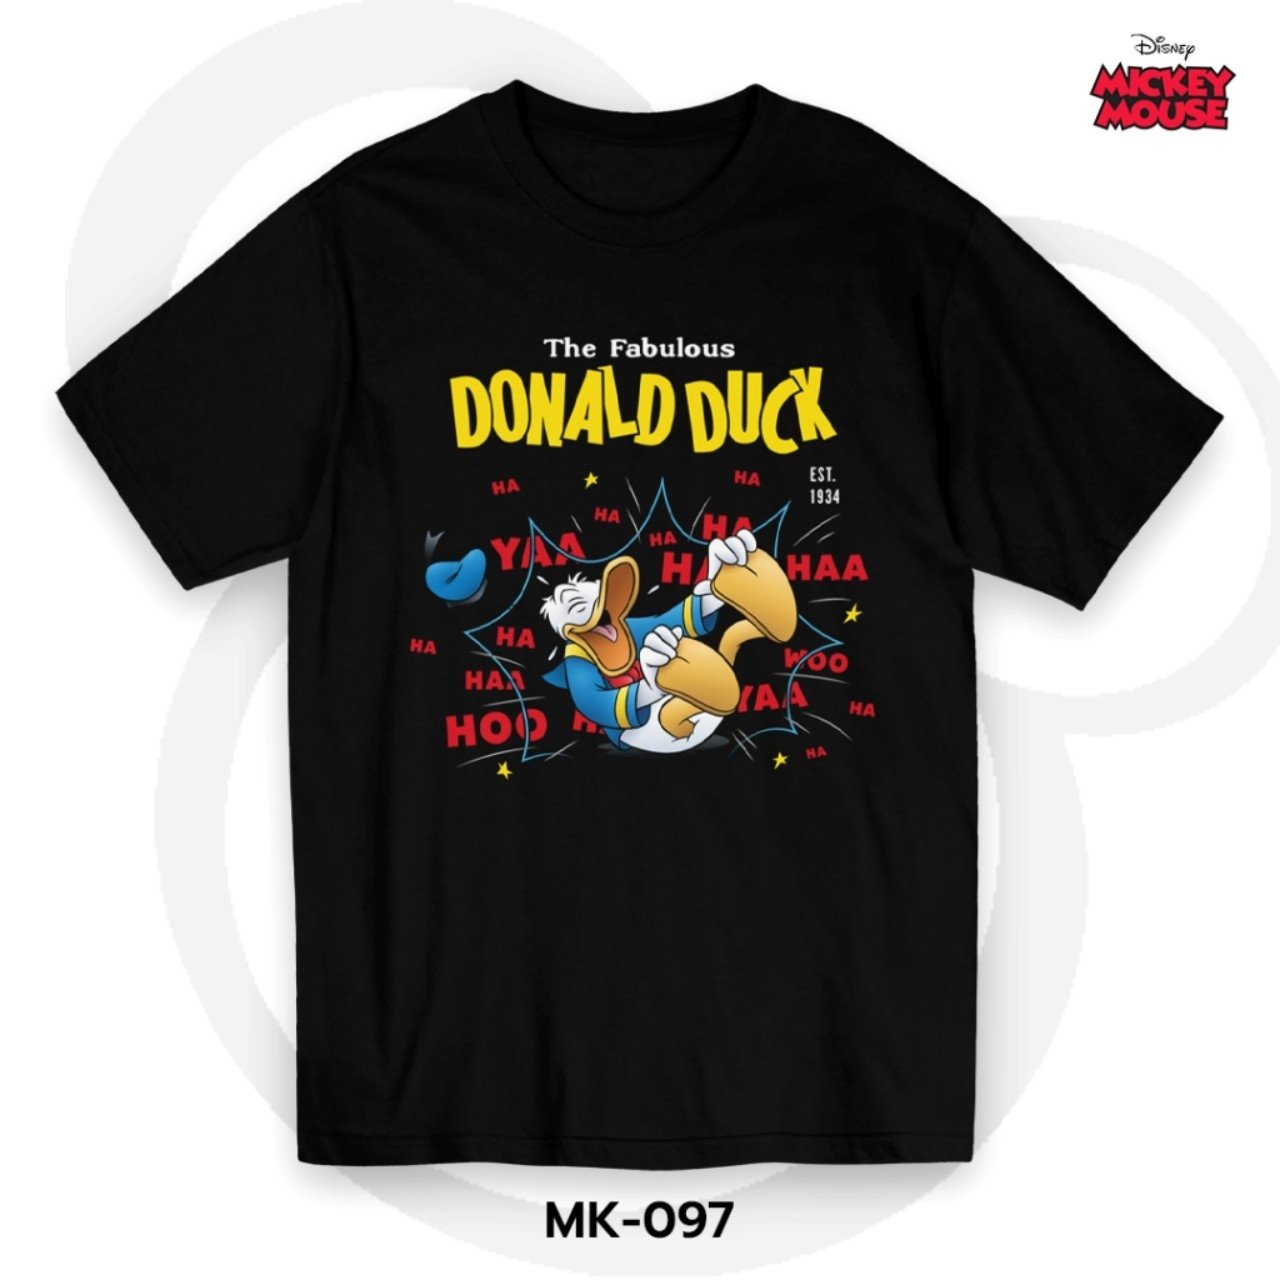 Donald Duck เสื้อยืดลิขสิทธิ์ คอกลม แขนสั้น (MK-097)